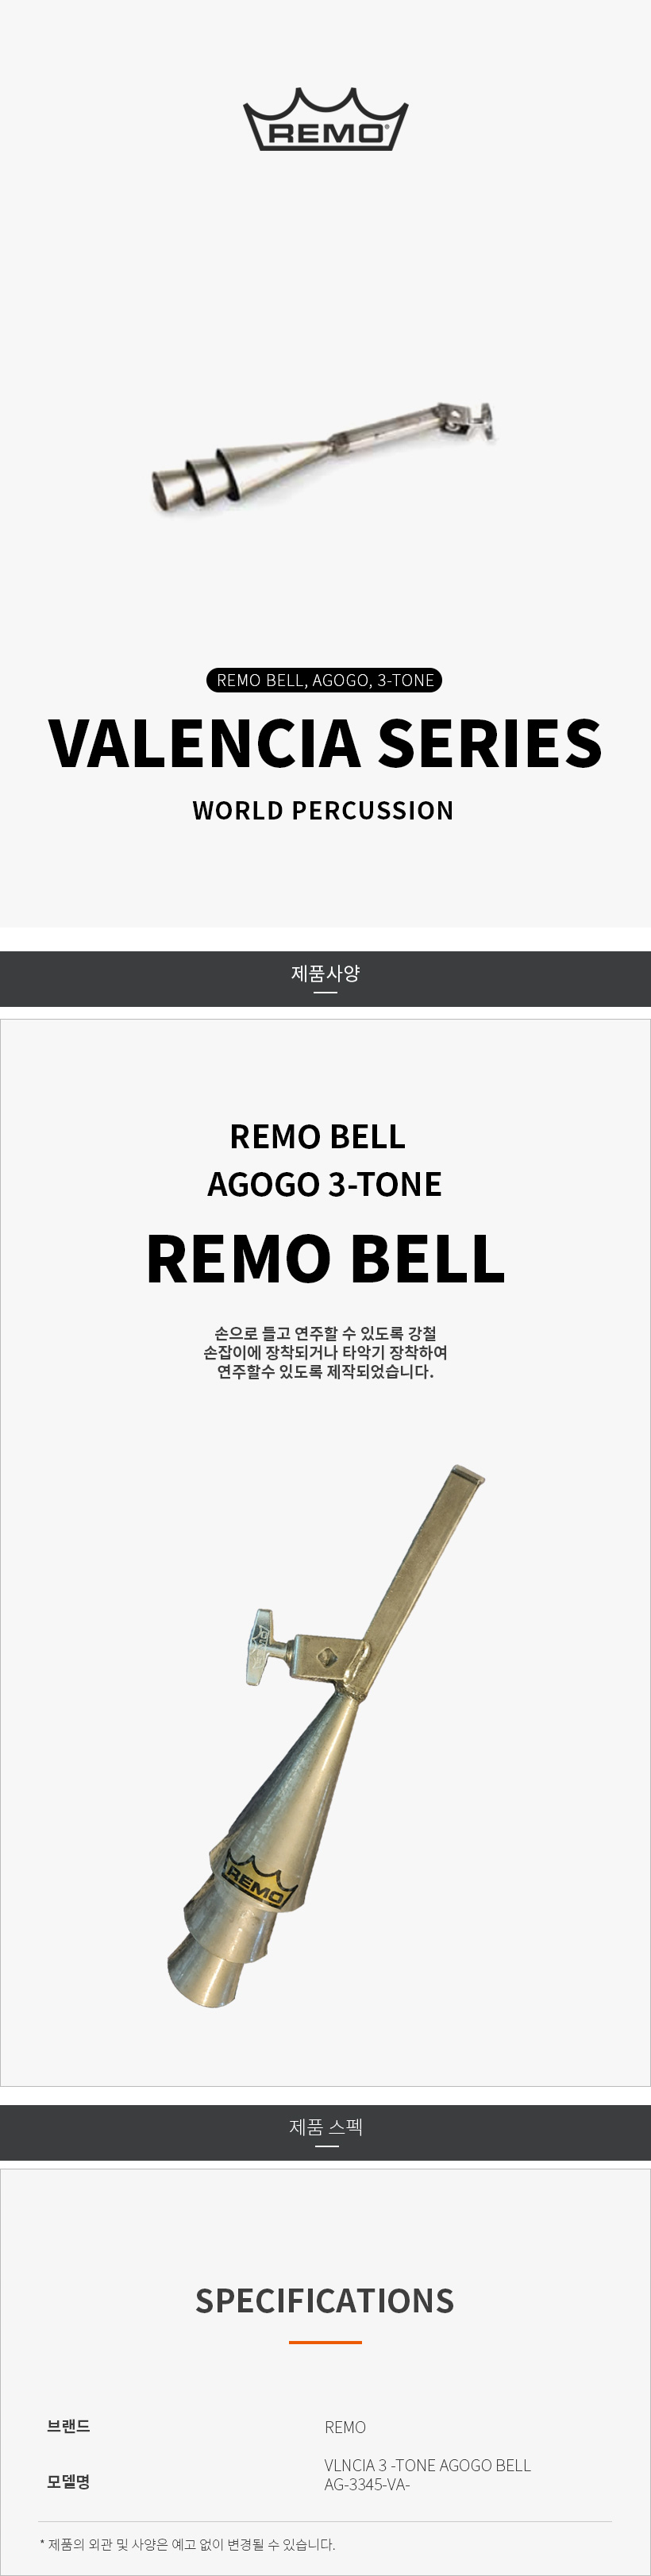 3-tone-agogo-bell